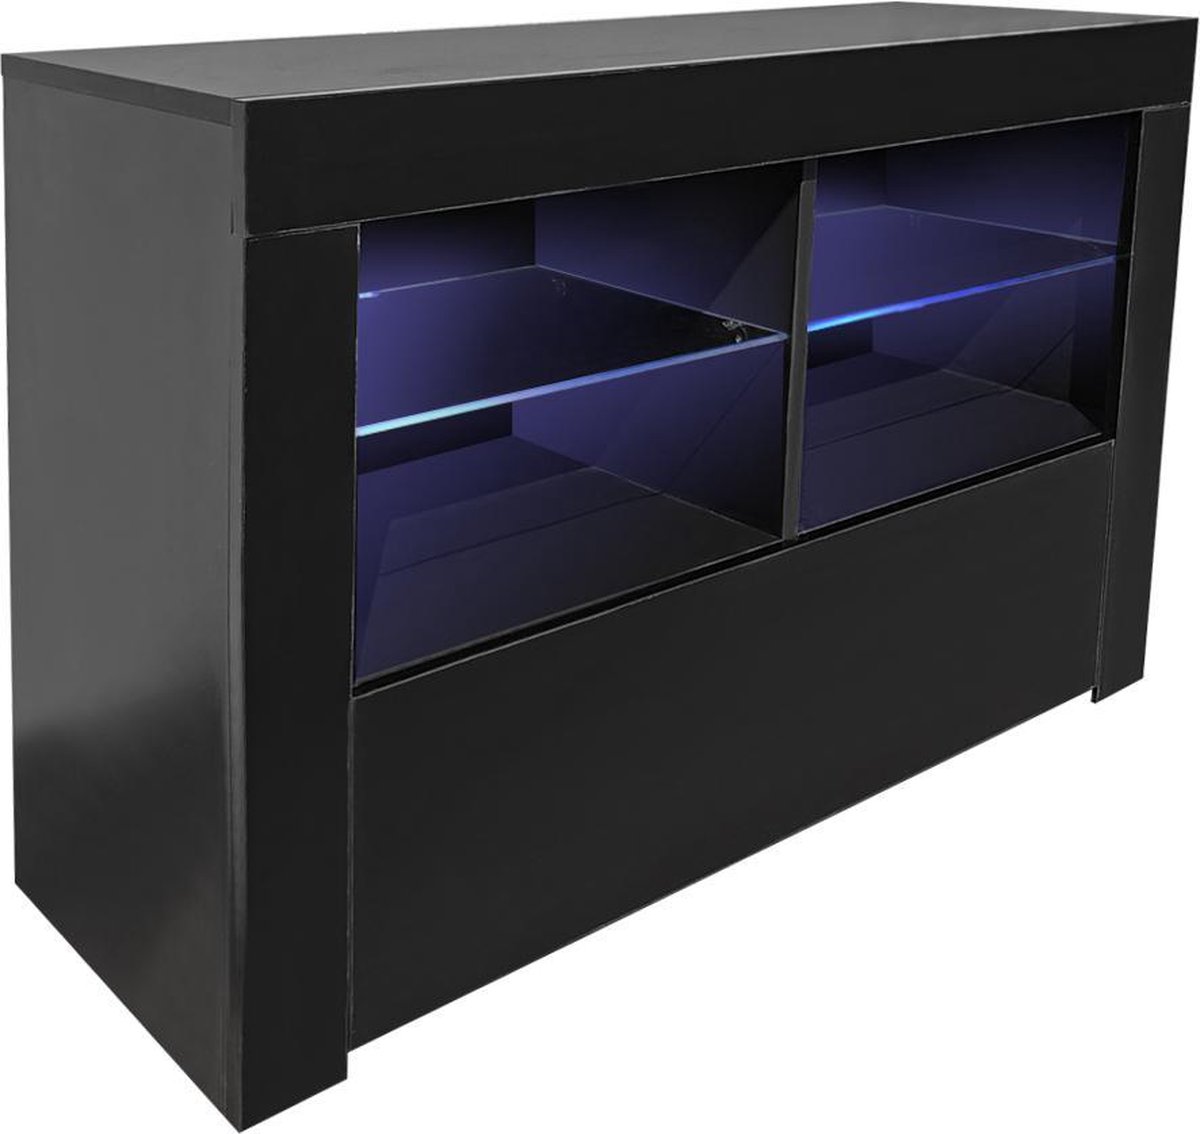 TV meubel kast - media meubel game set up - led verlichting - zwart |